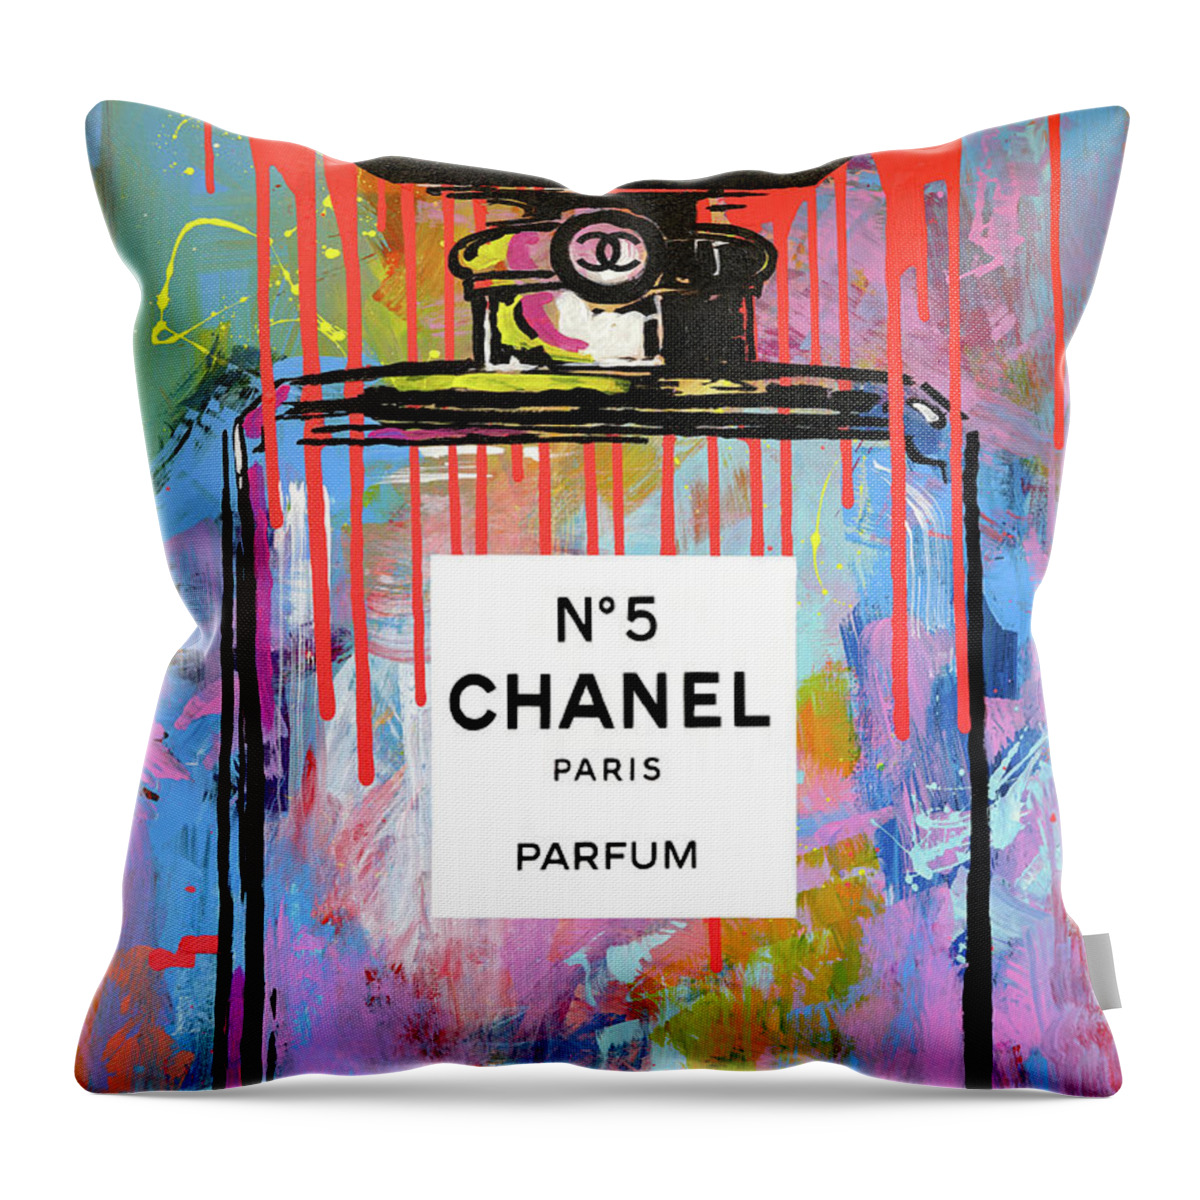 Chanel Urban Pop Art Throw Pillow by James Hudek - Pixels